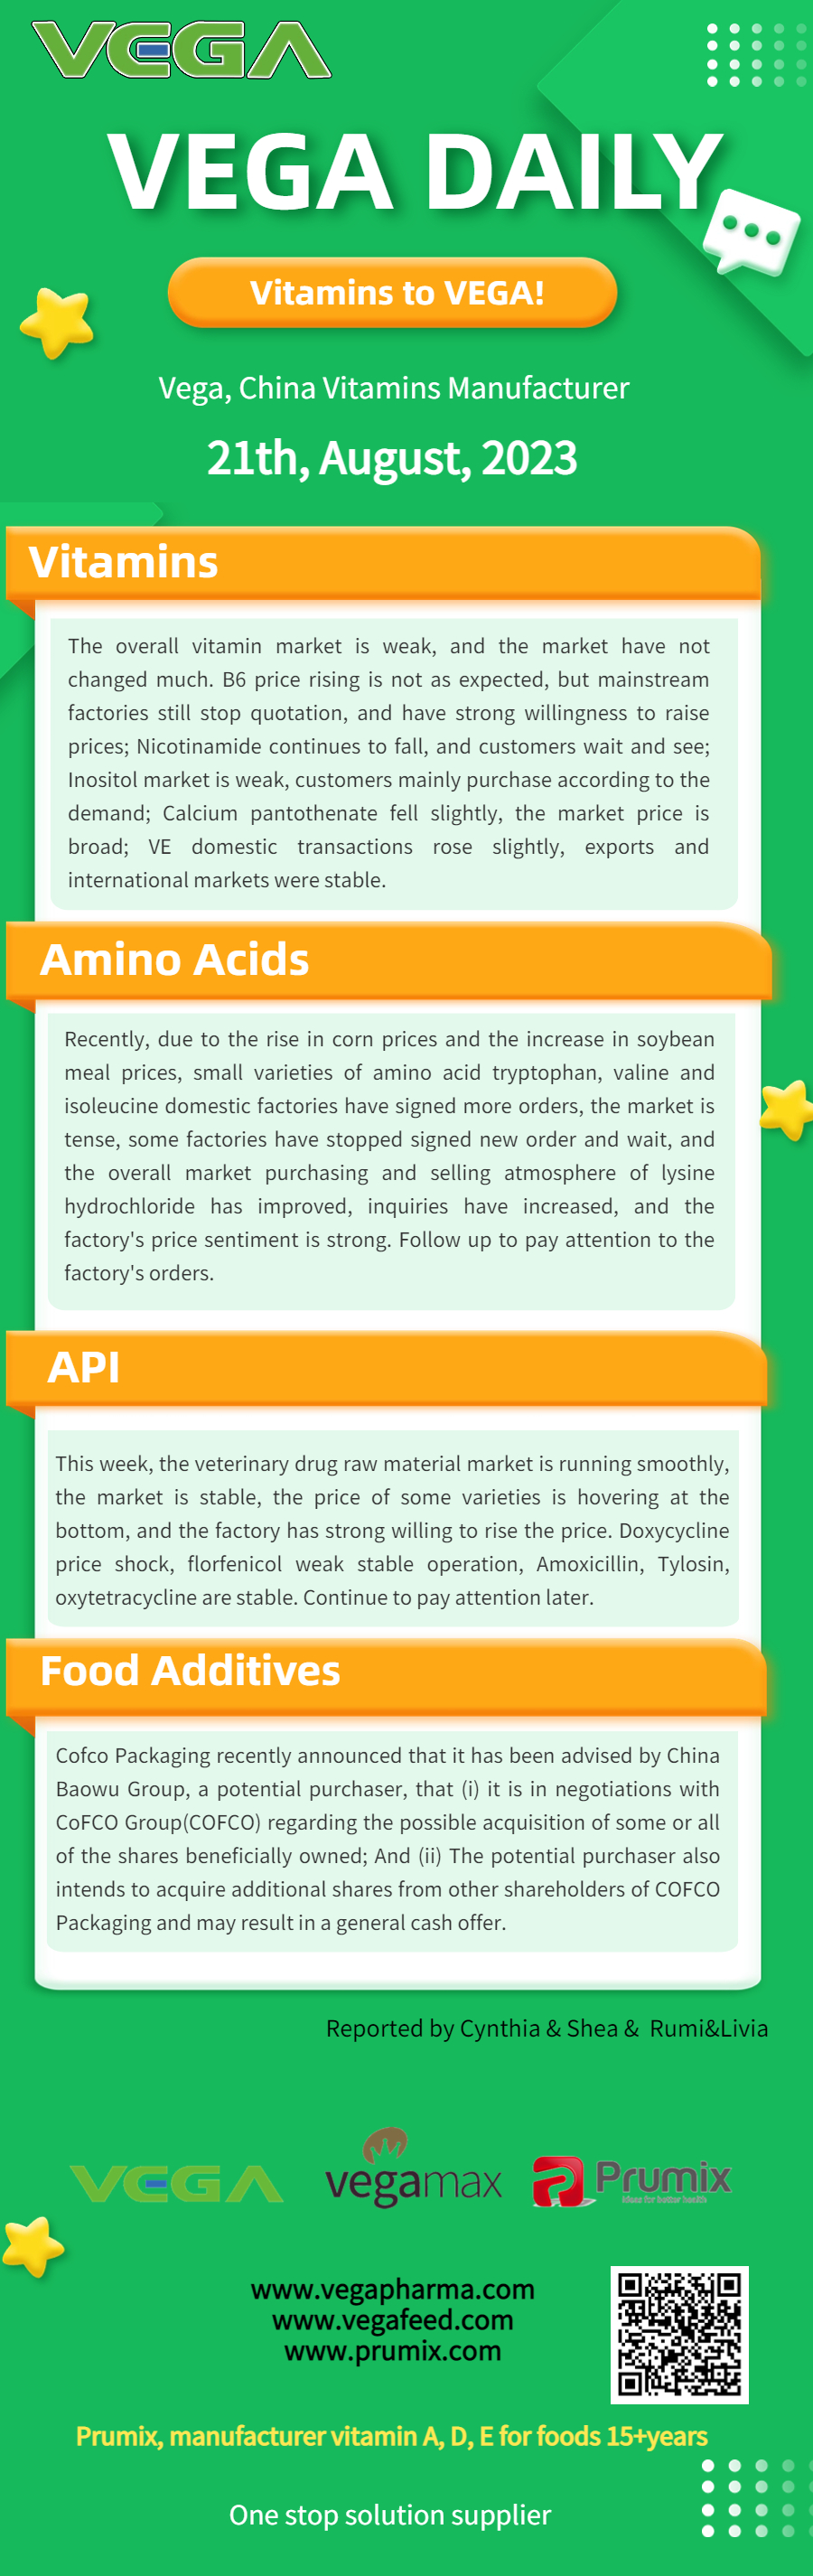 Vega Daily Dated on August  21st 2023 Vitamin Amino Acid API Food Additives.jpg